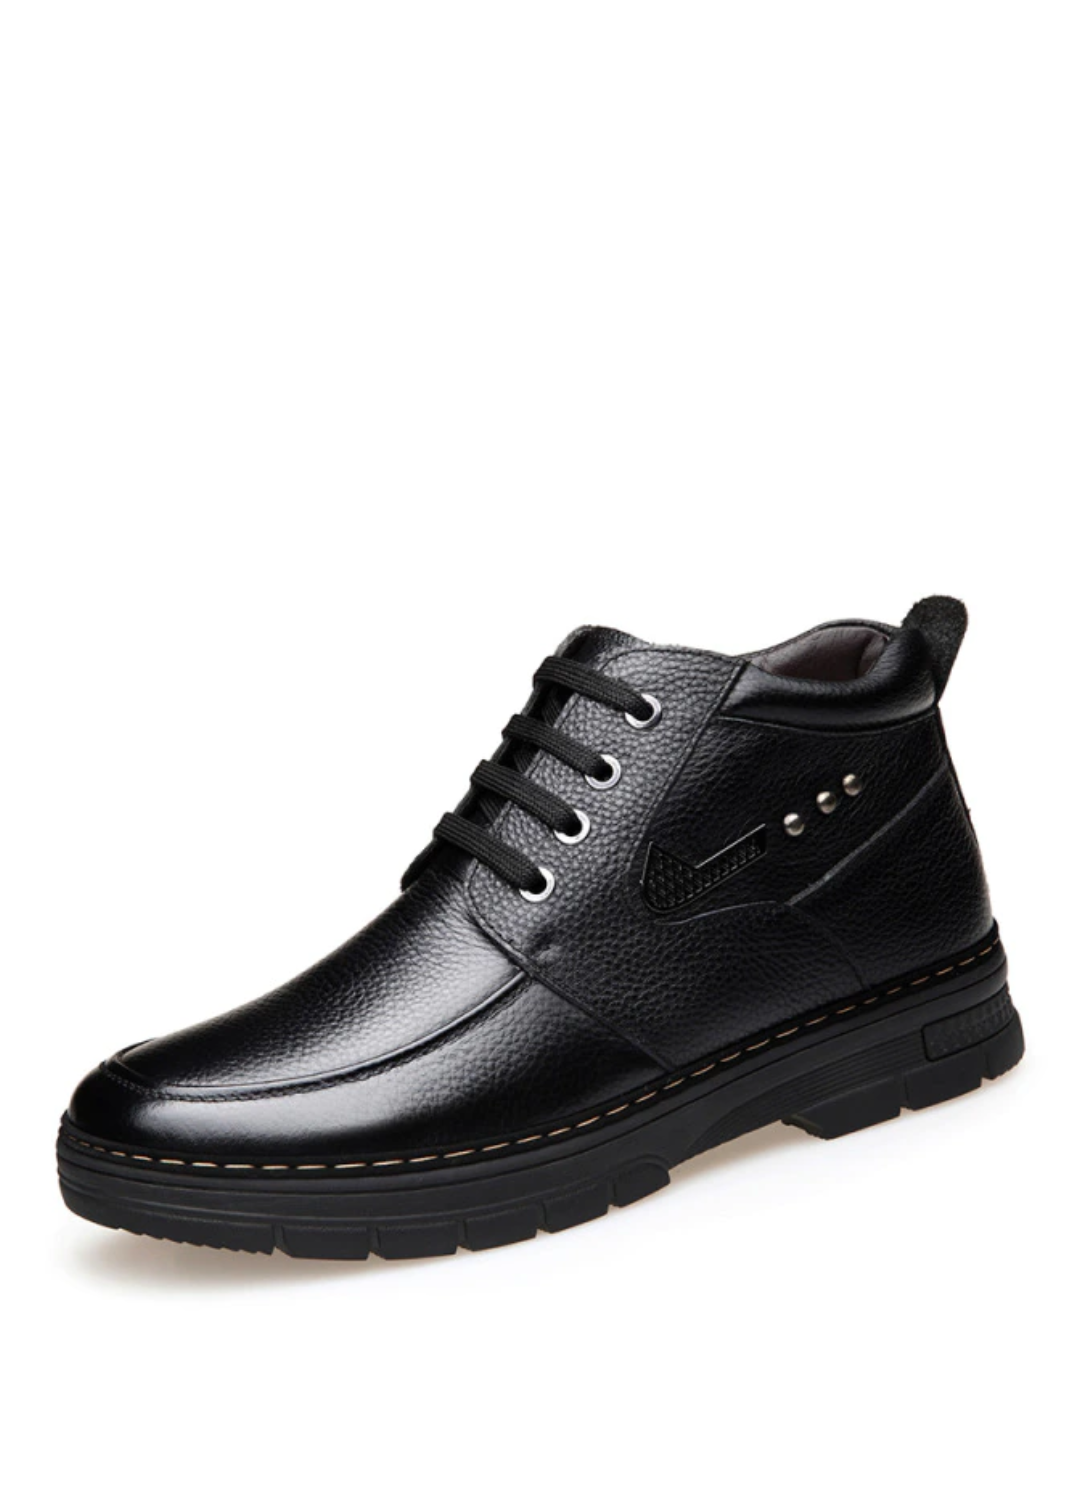 Arcog Men's Winter Boots | Ultrasellershoes.com – Ultra Seller Shoes